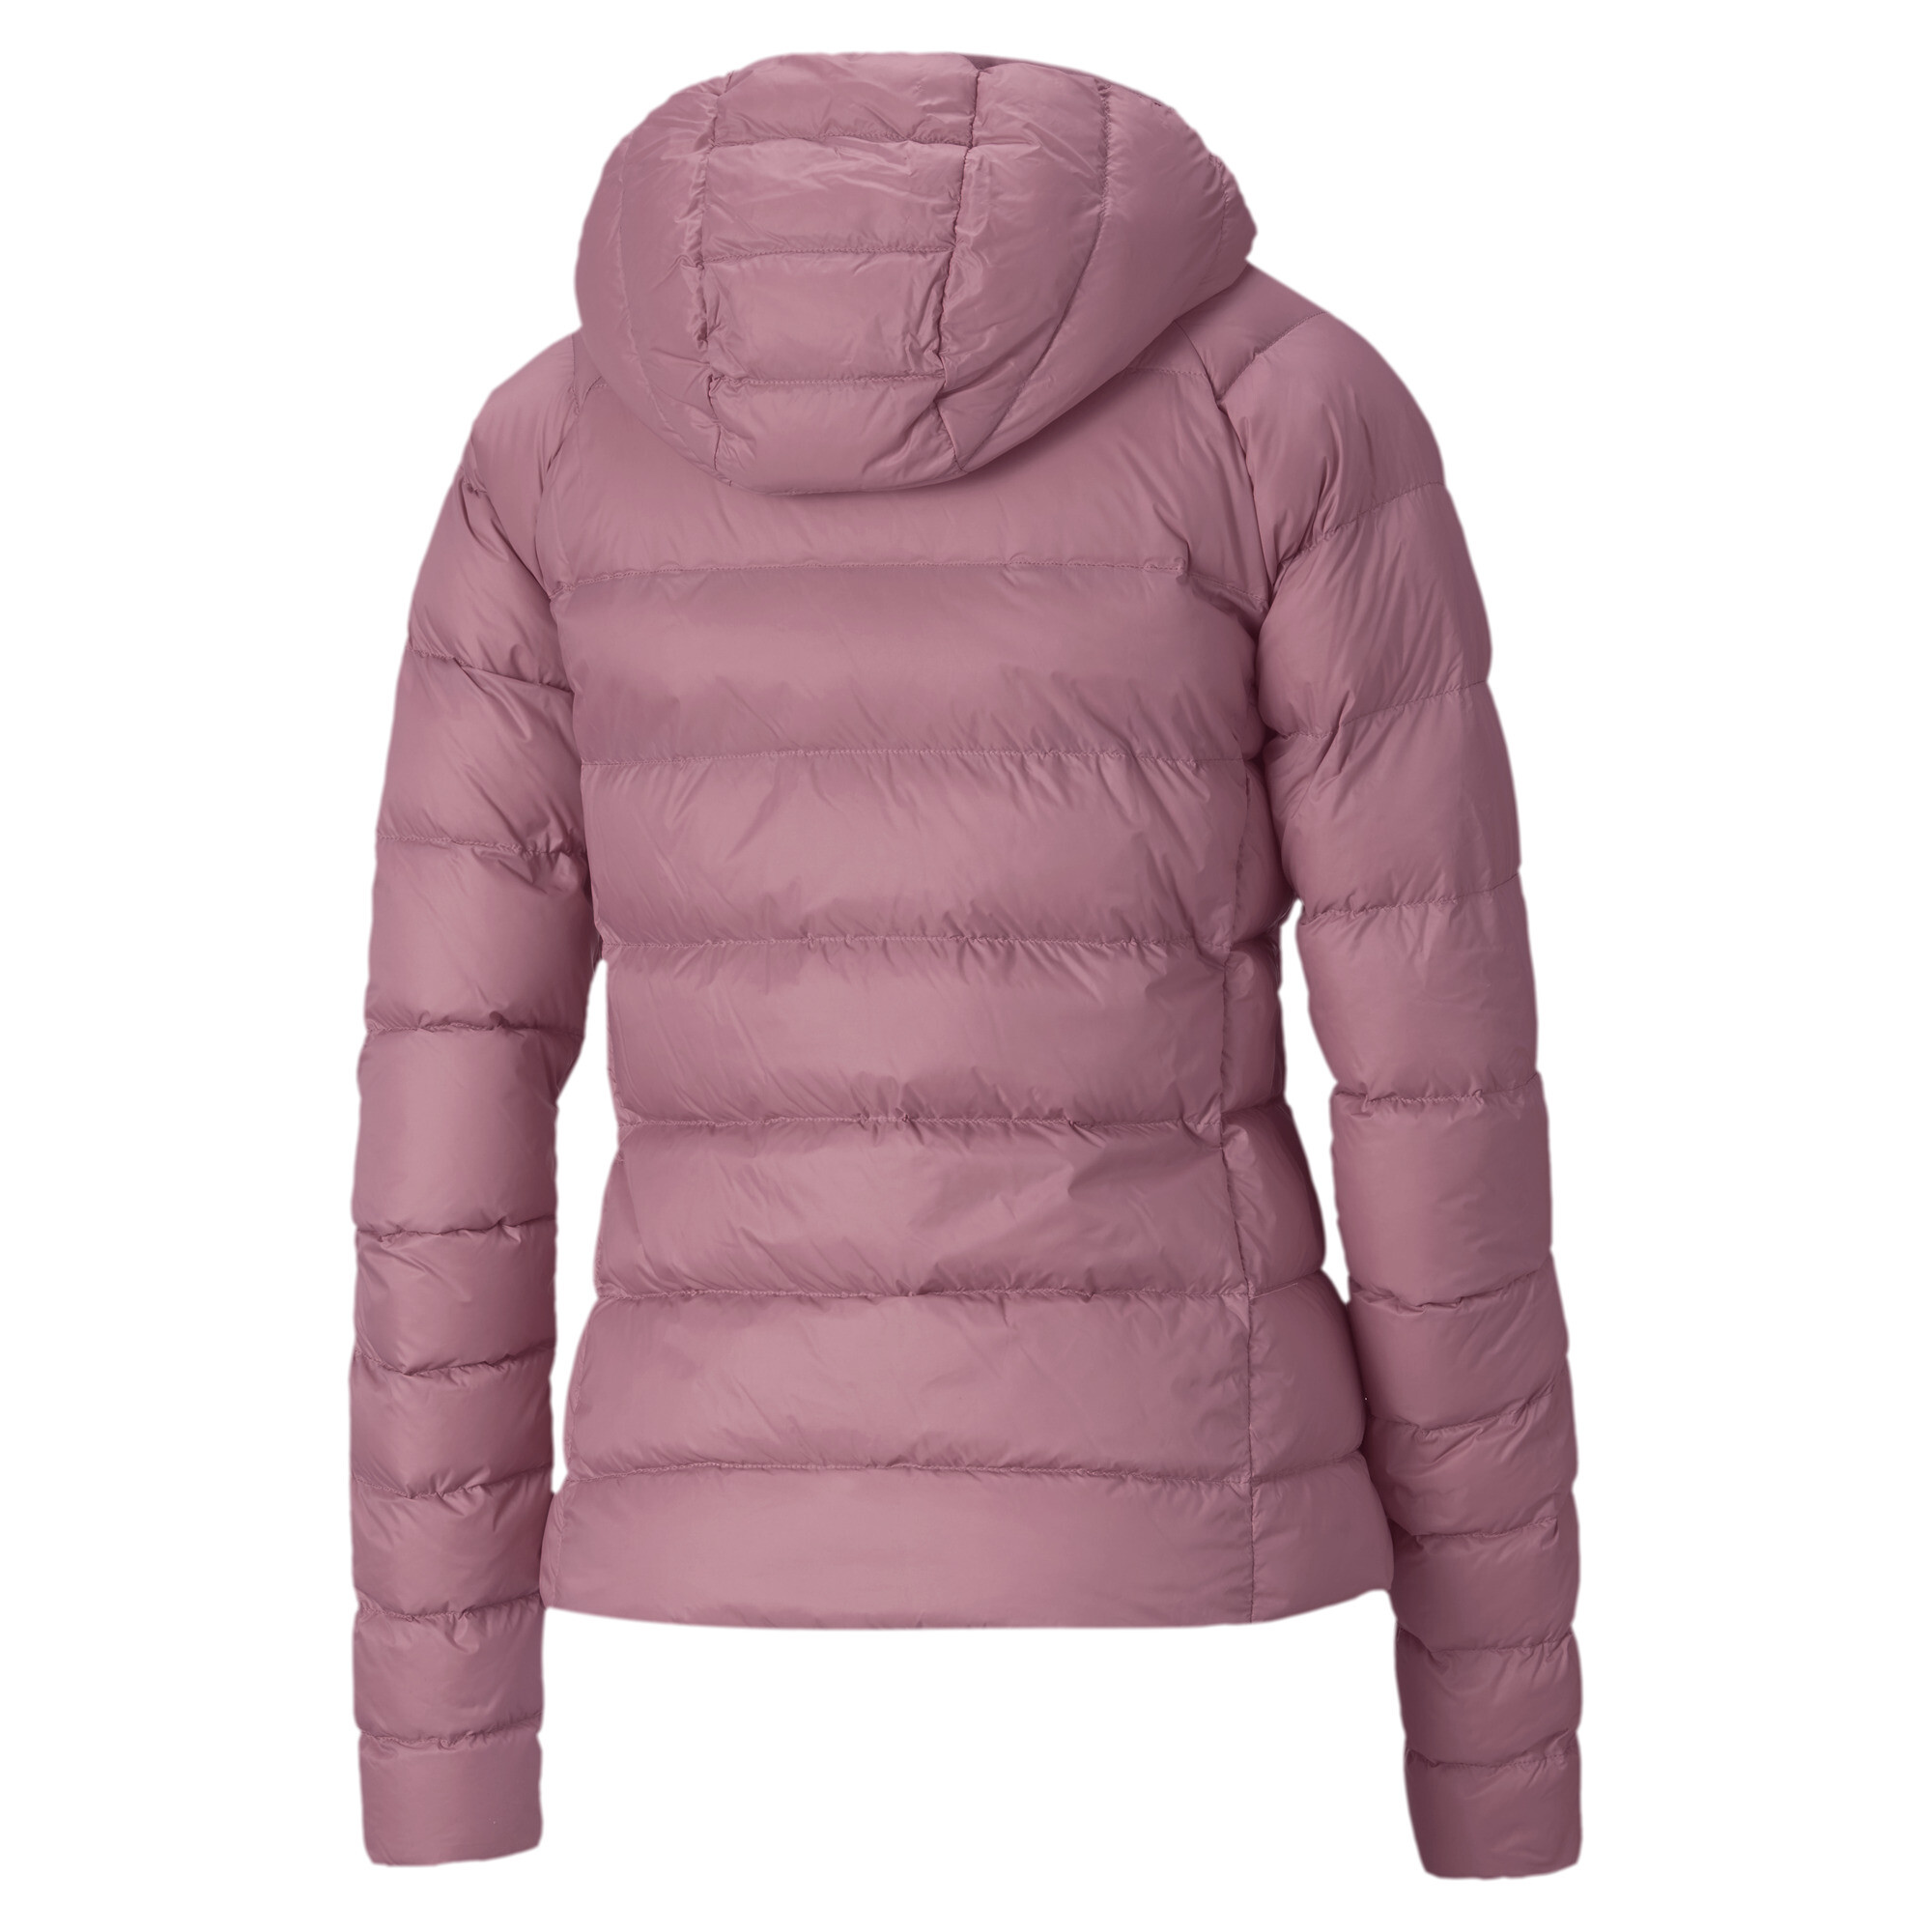 puma pwrwarm jacket